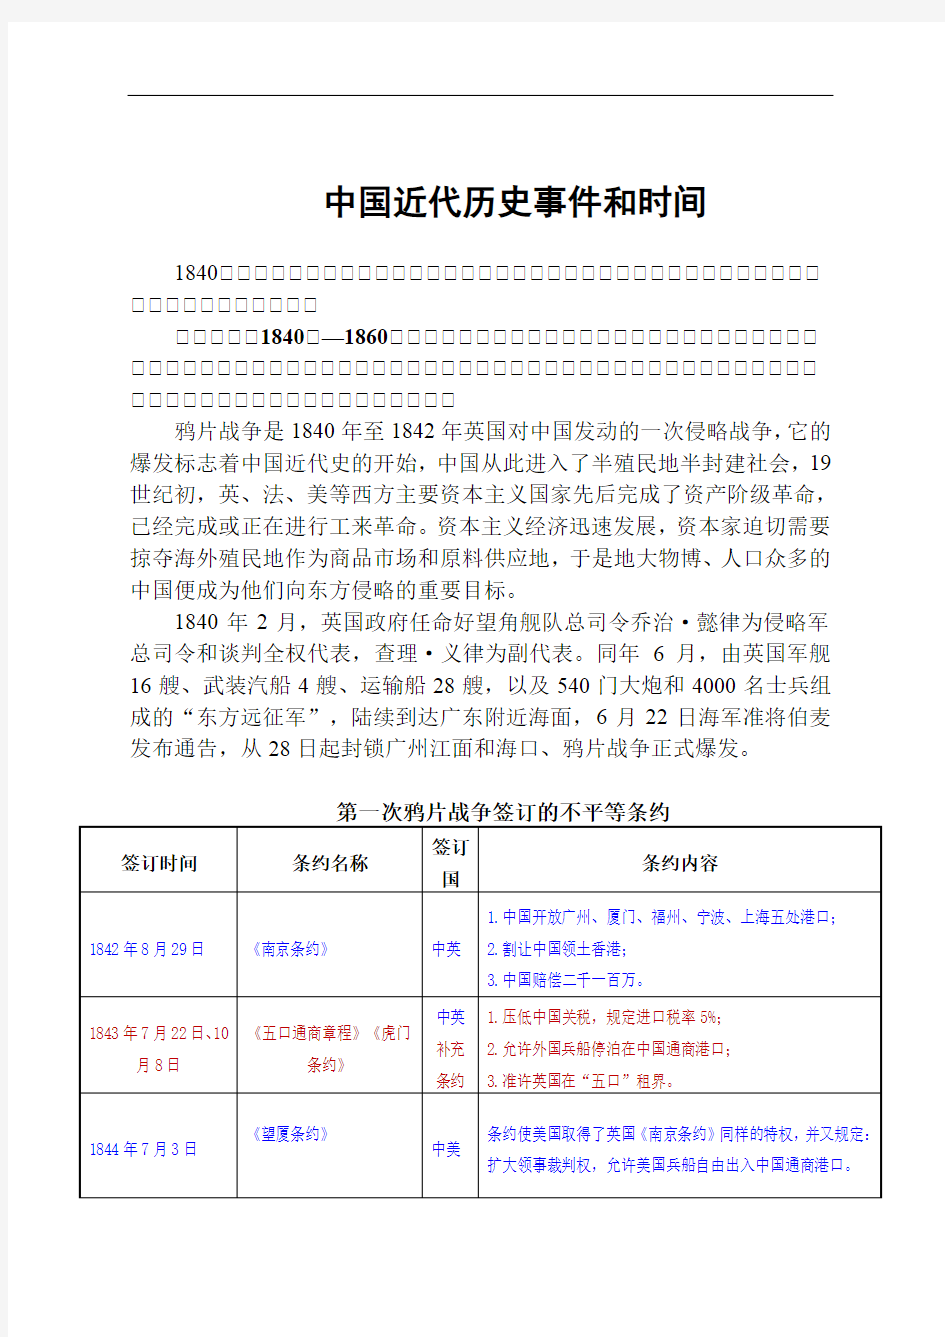 (完整版)(汇总)中国近代历史事件和时间,推荐文档